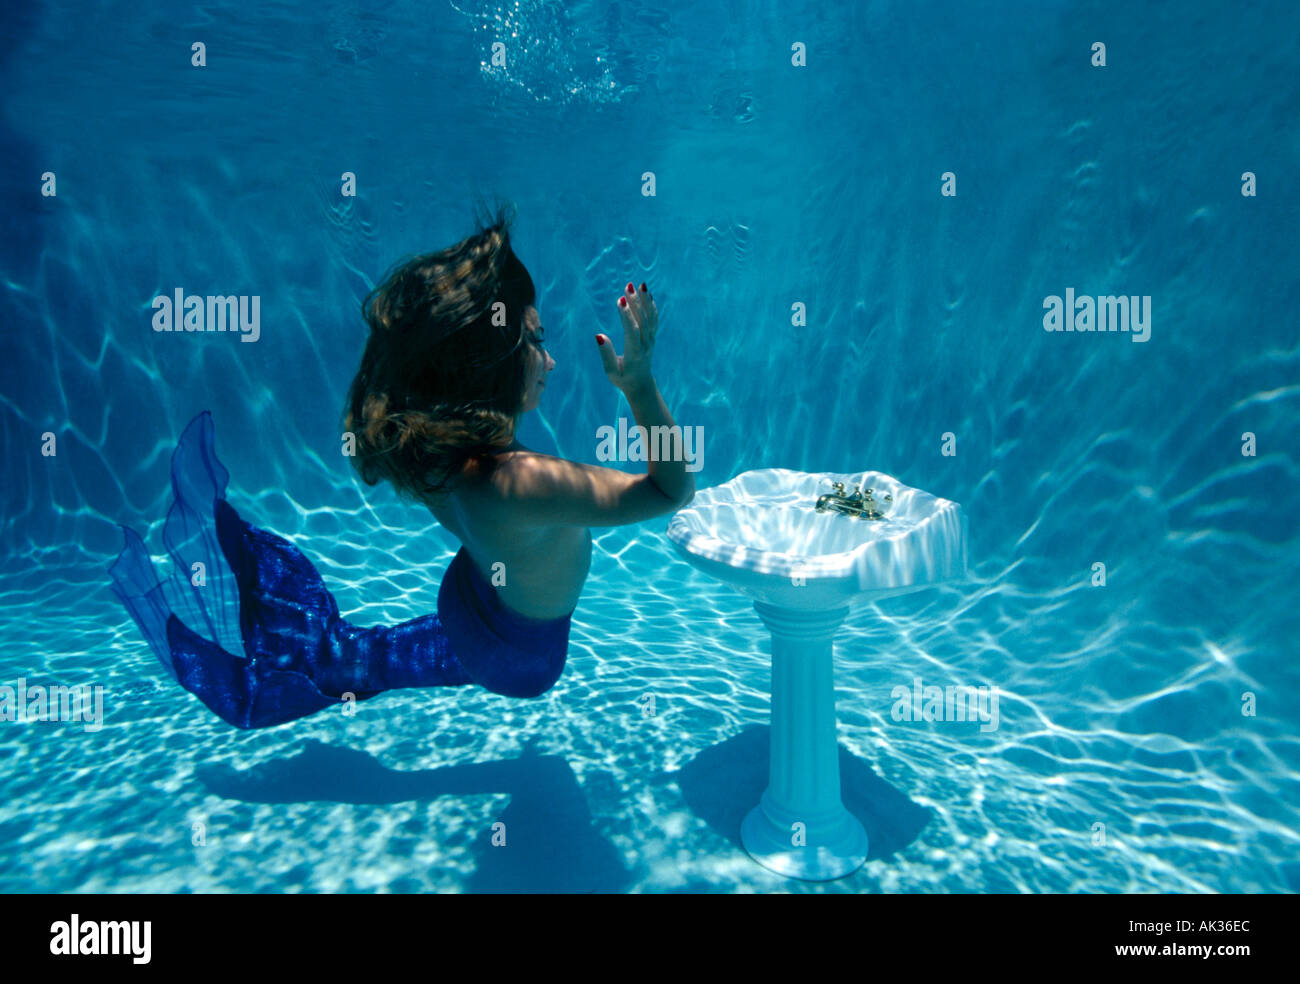 Sirena subacuática y lavabo de pedestal Foto de stock